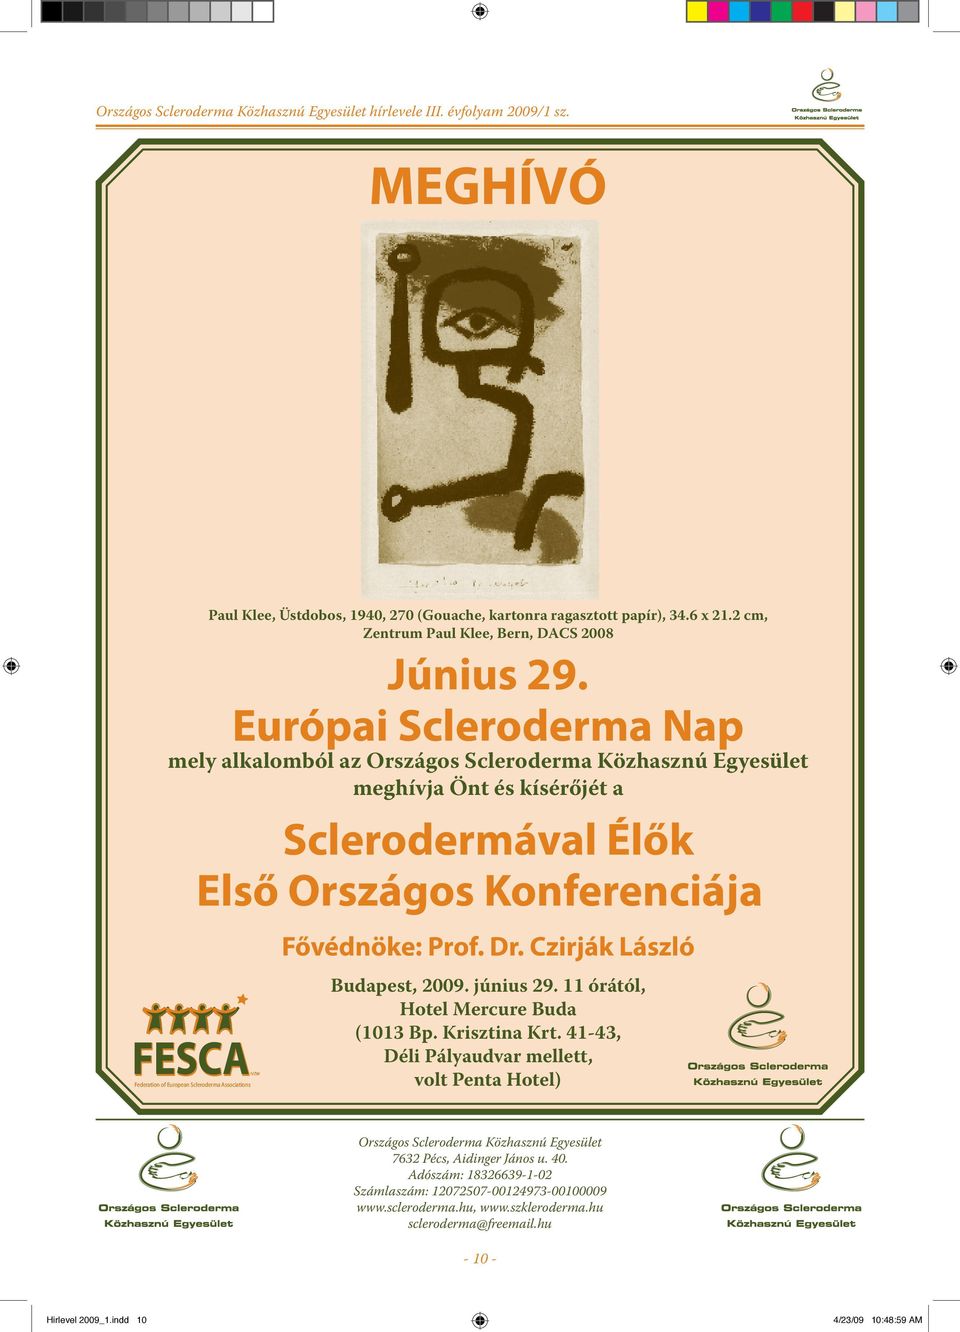 Czirják László IVZW Federation of European Scleroderma Associations Budapest, 2009. június 29. 11 órától, Hotel Mercure Buda (1013 Bp. Krisztina Krt.